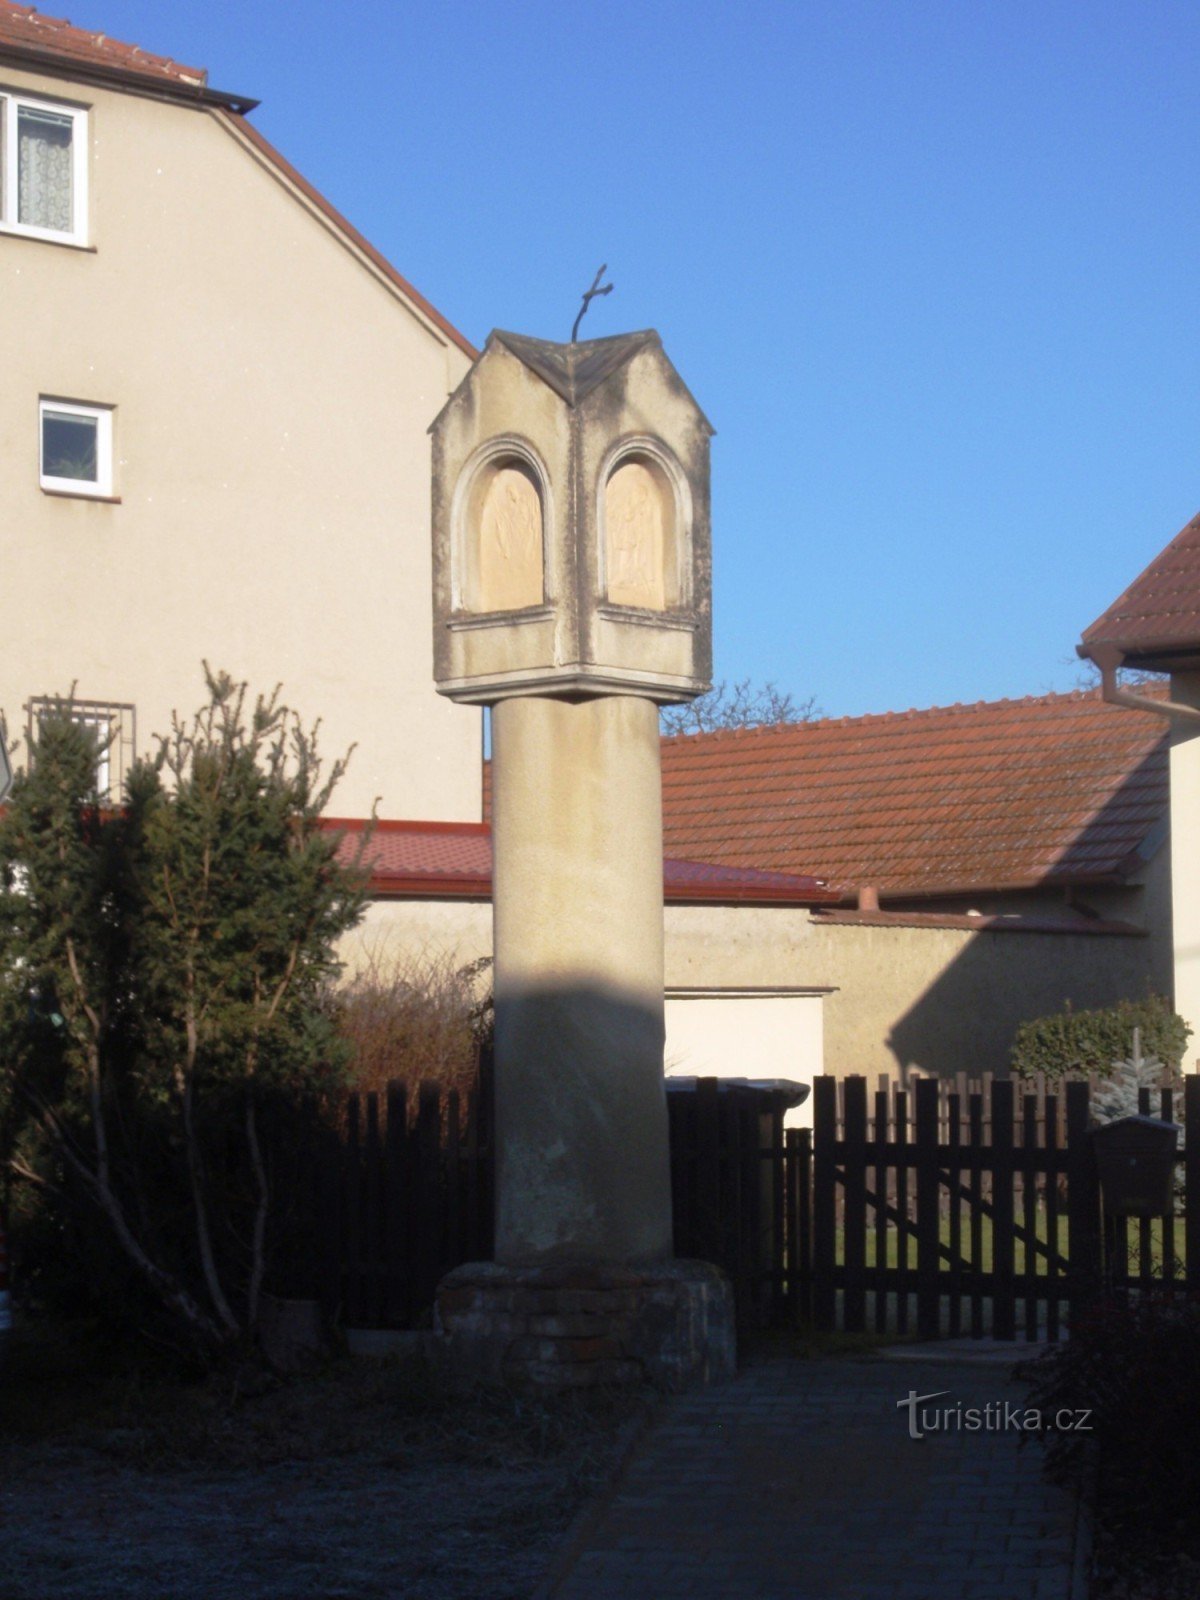 Troubsko - små monumenter